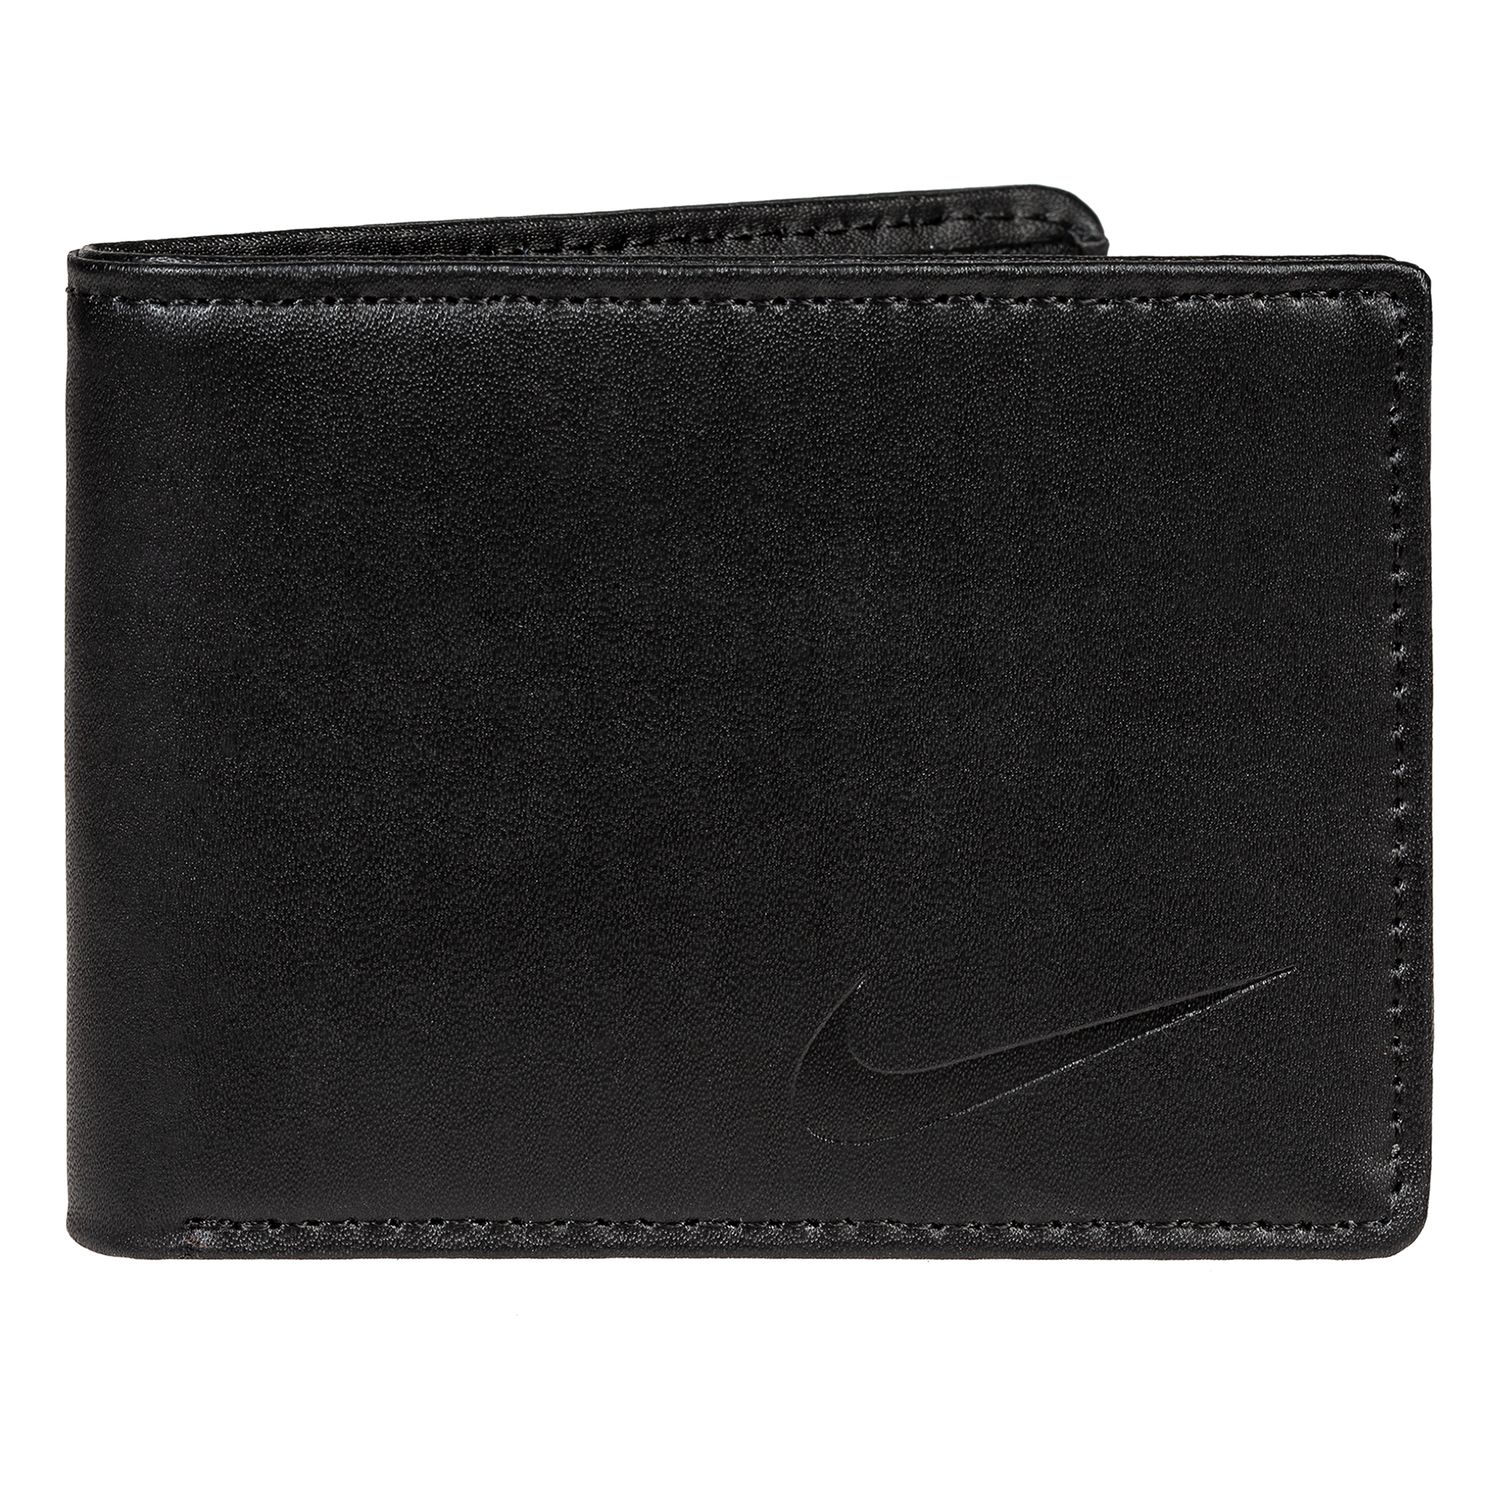 Nike RFID-Blocking Leather Bifold Wallet